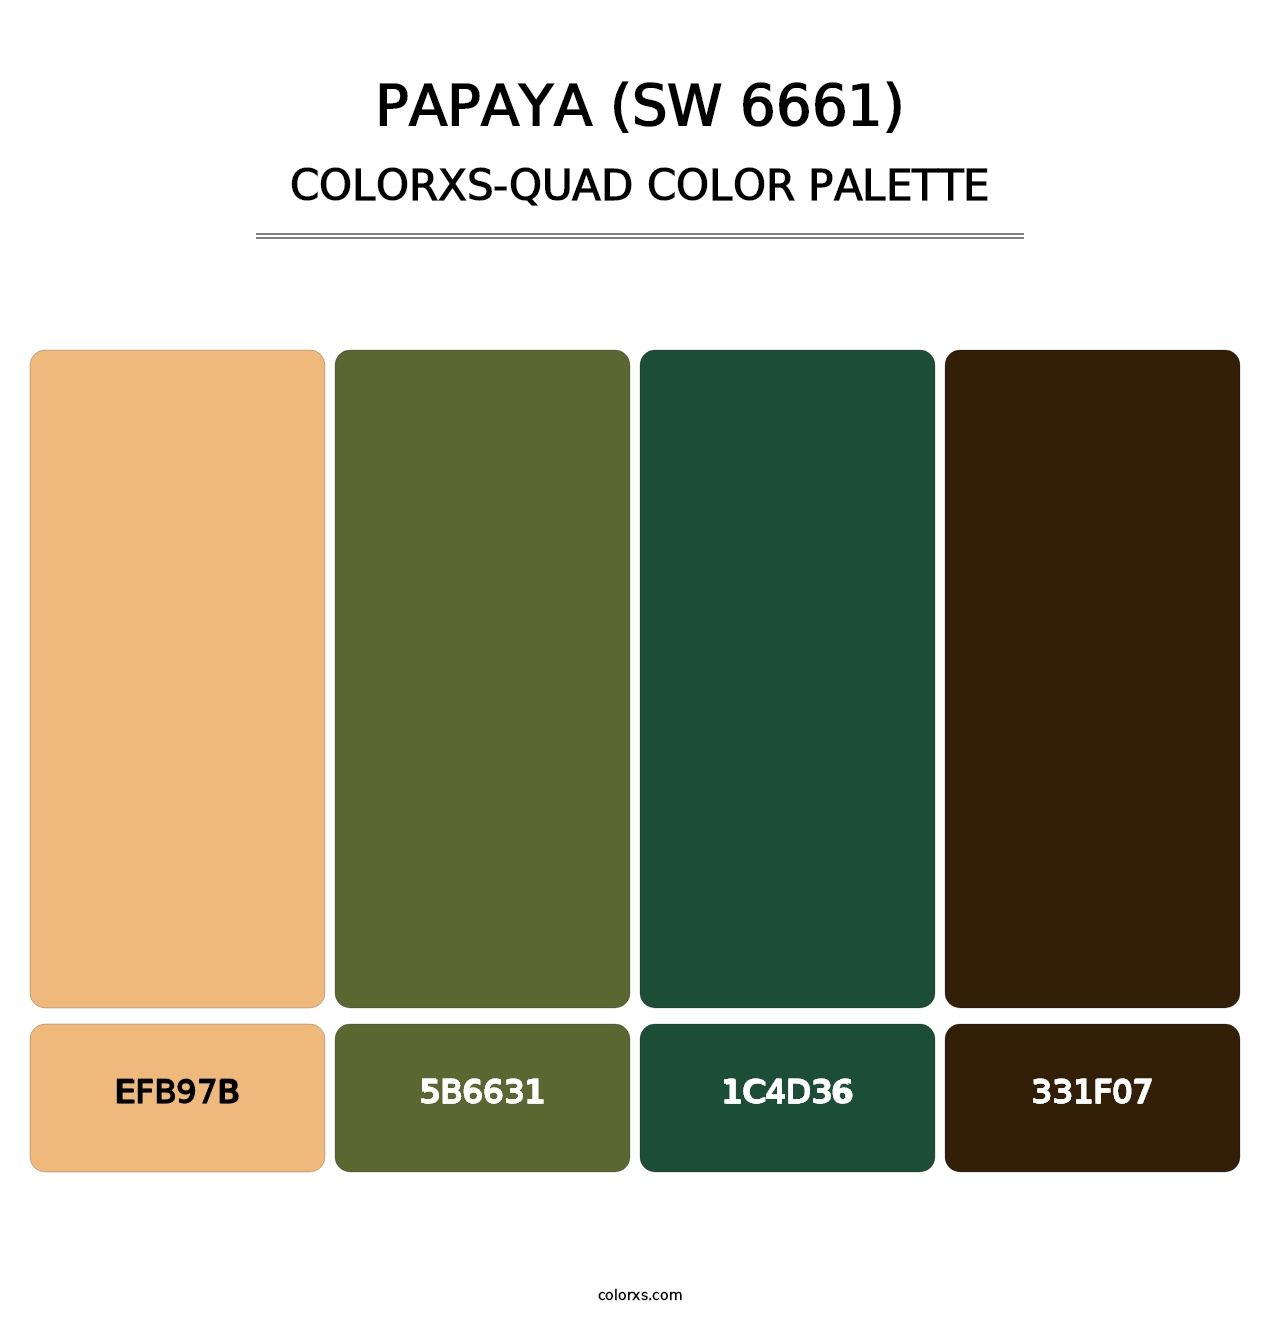 Papaya (SW 6661) - Colorxs Quad Palette